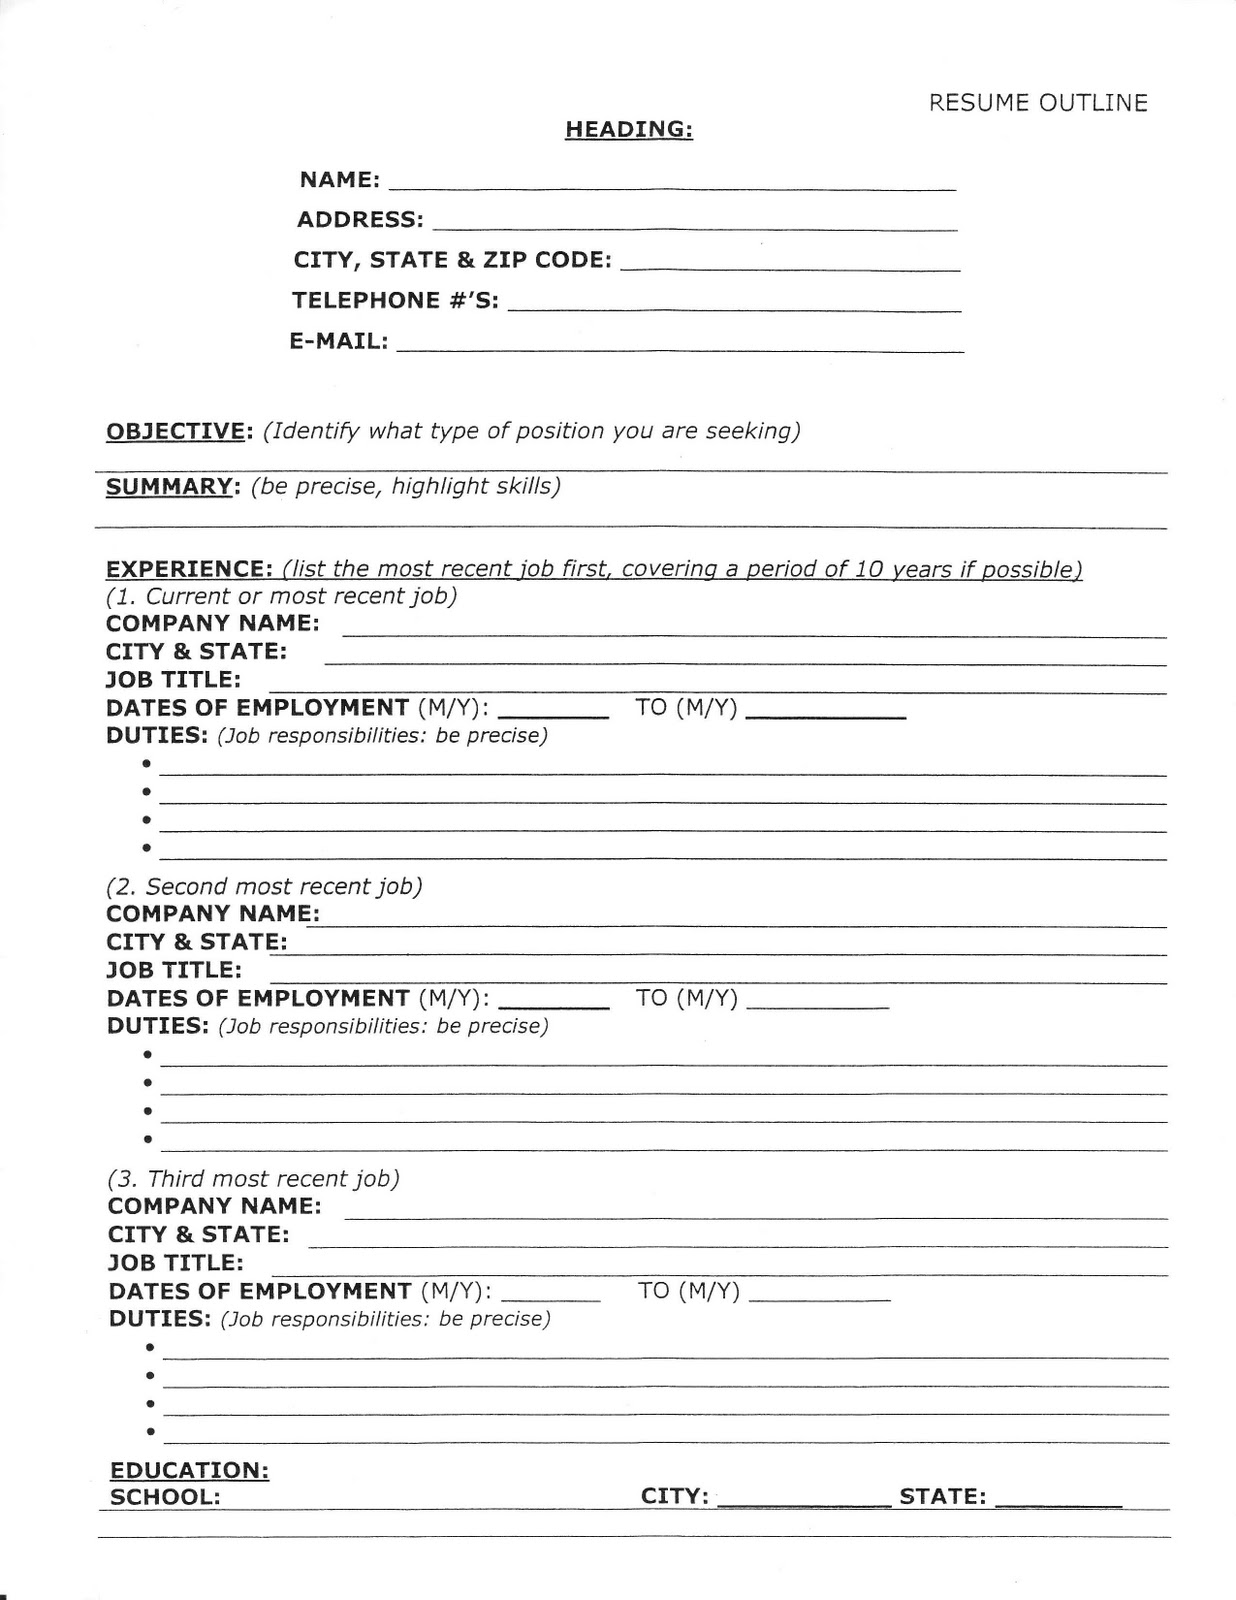 My resume clean cv resume